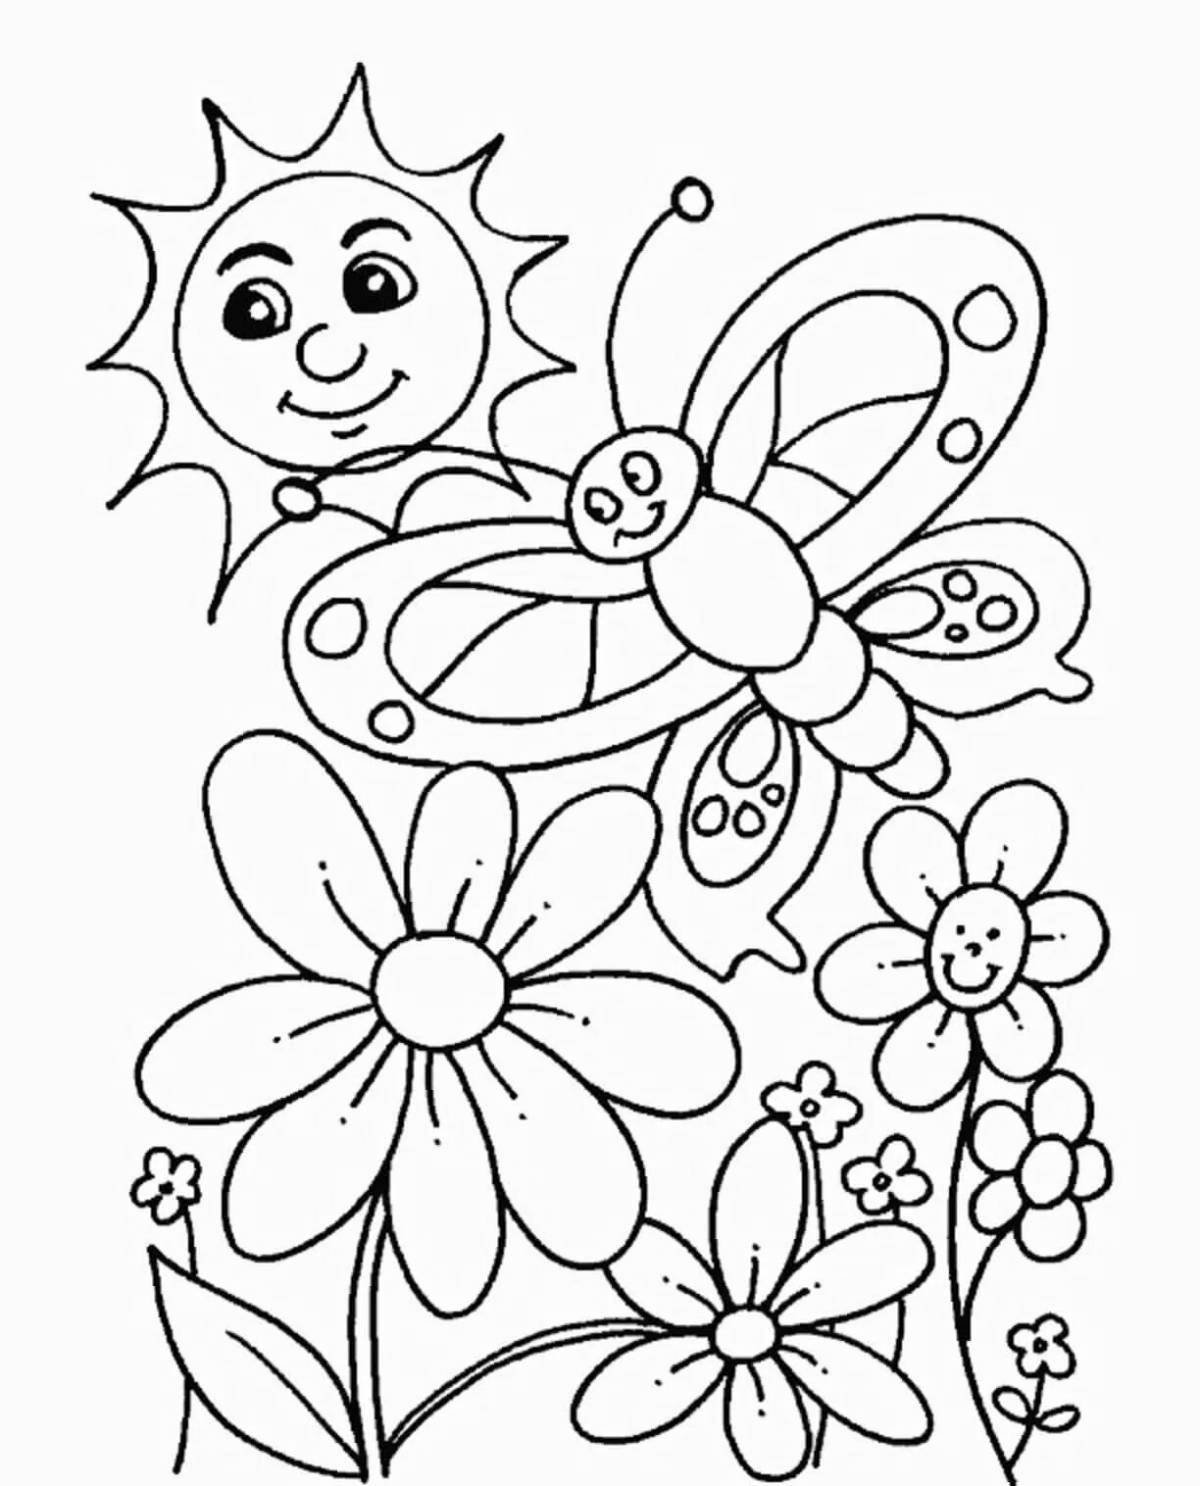 Буйная раскраска цветы для детей 4-5 лет